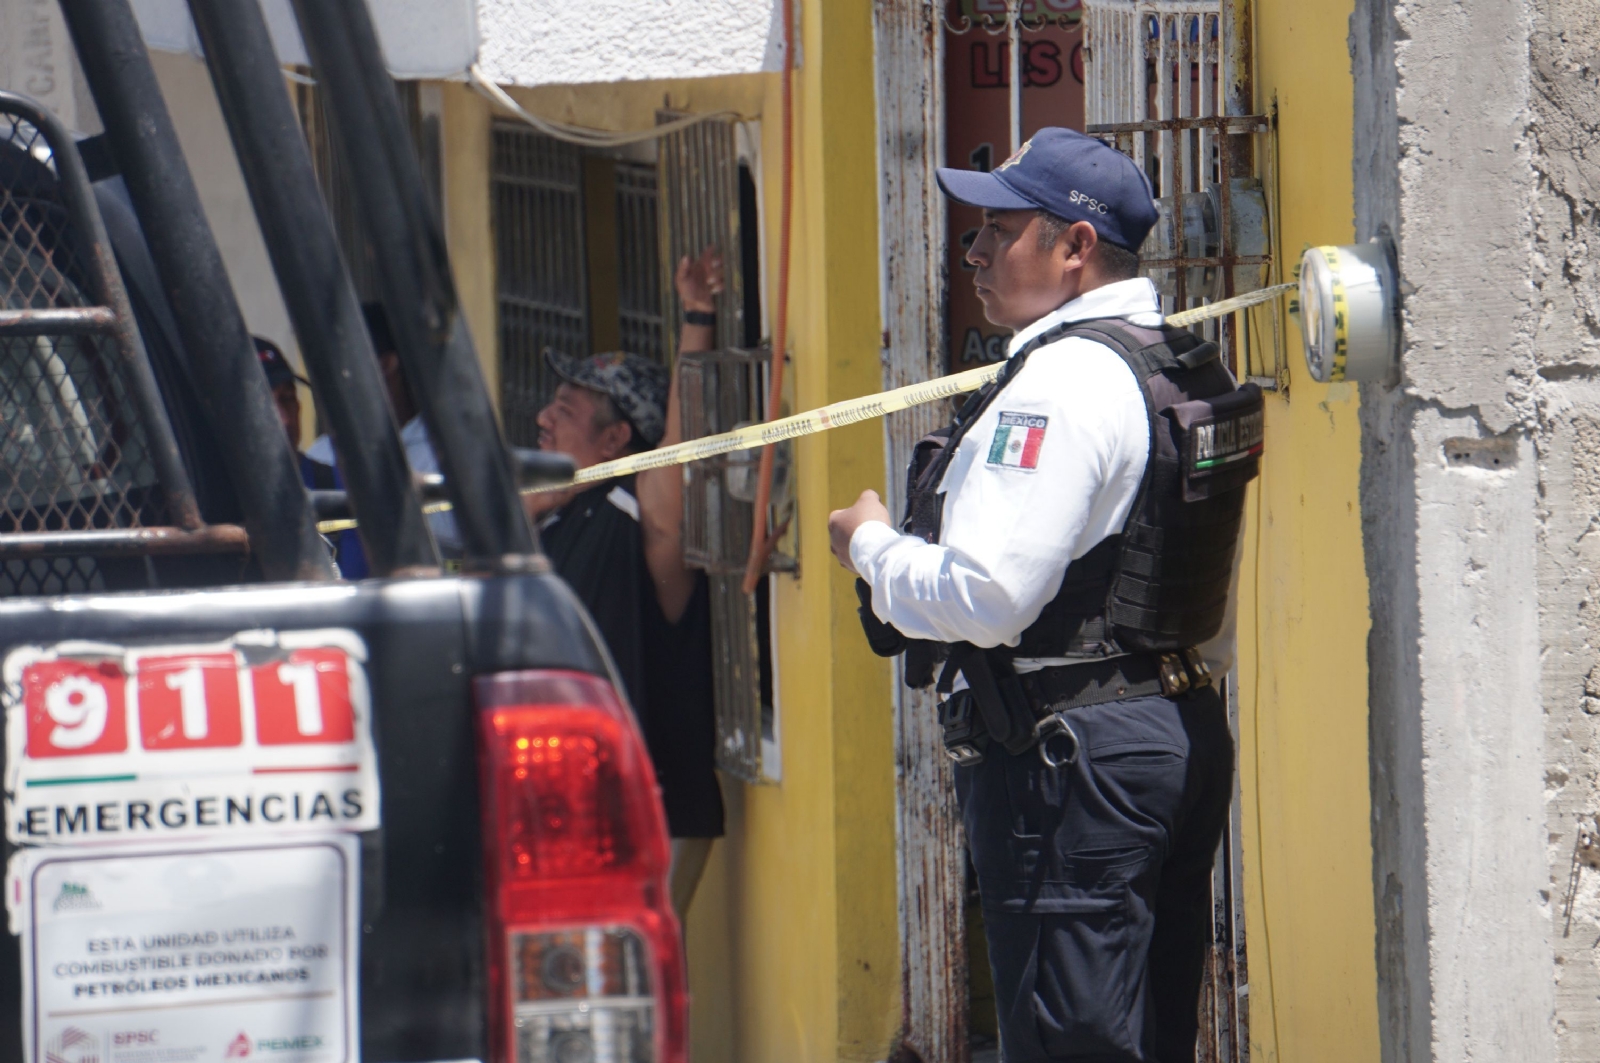 El método más utilizado para suicidio en Campeche fue el ahorcamiento con 101 casos